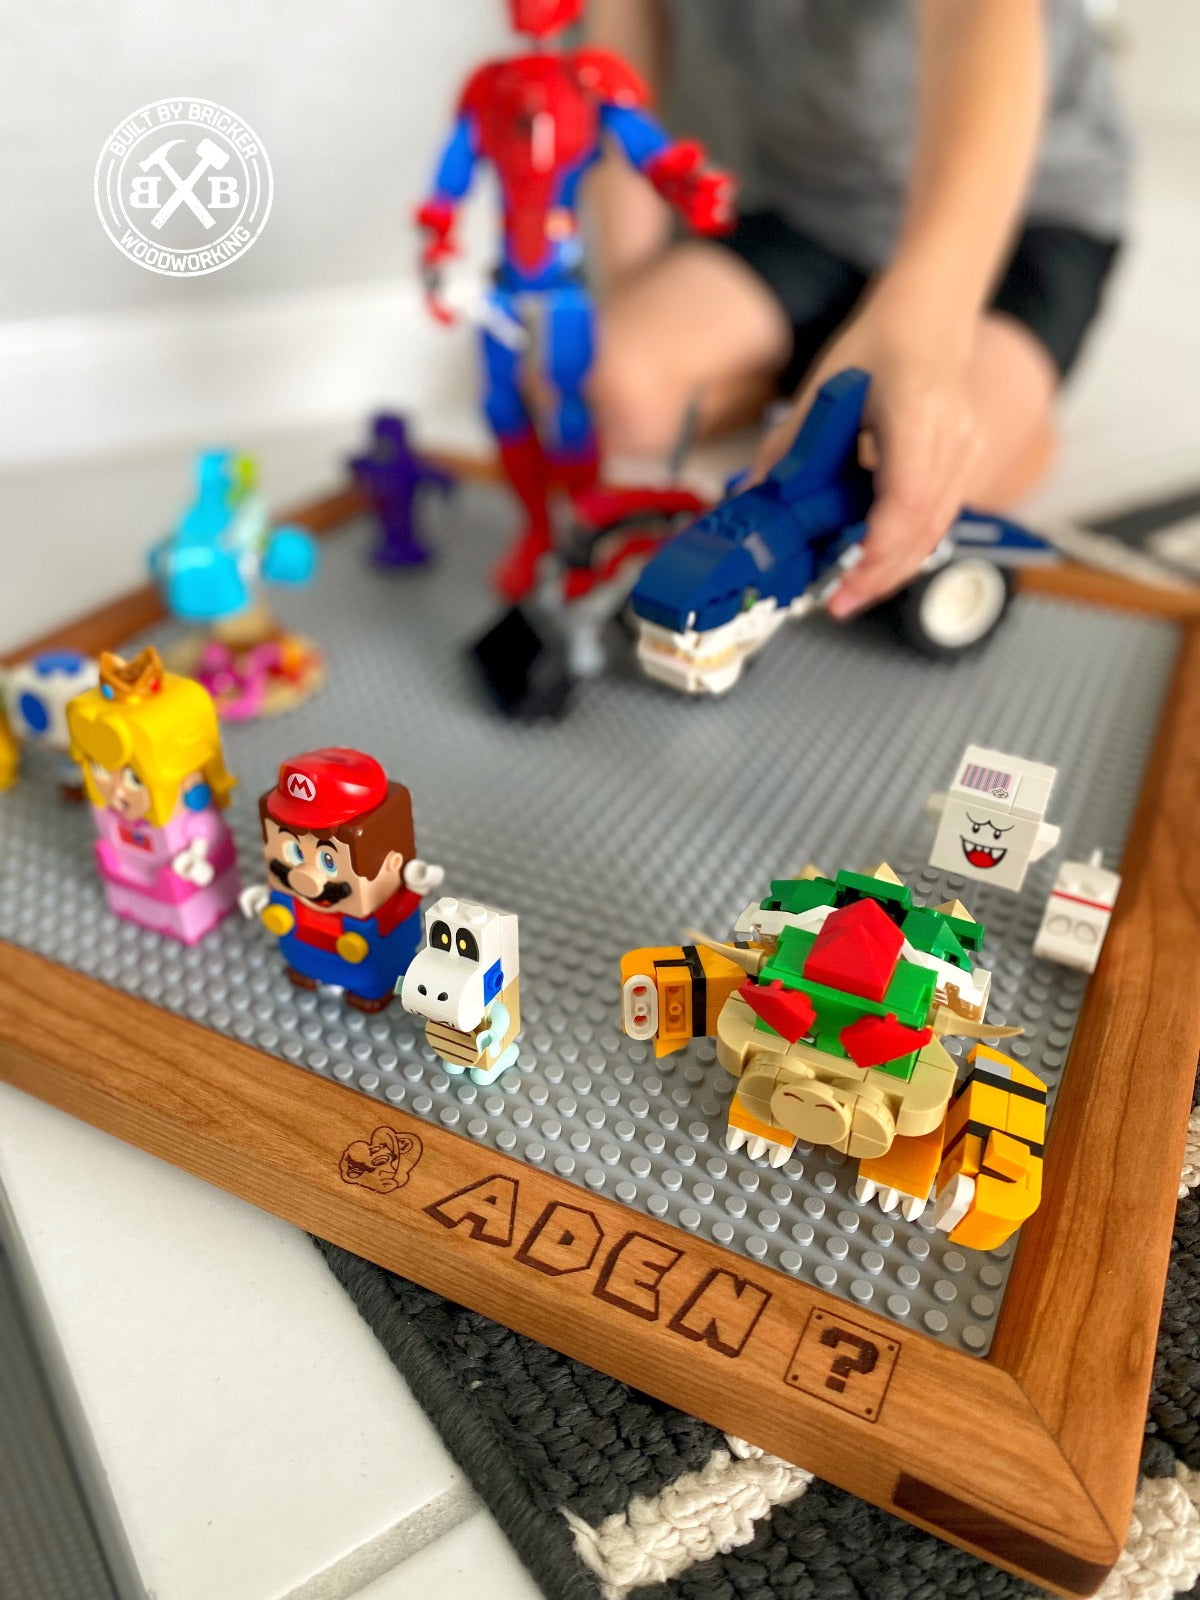 Lego Building Block Tray